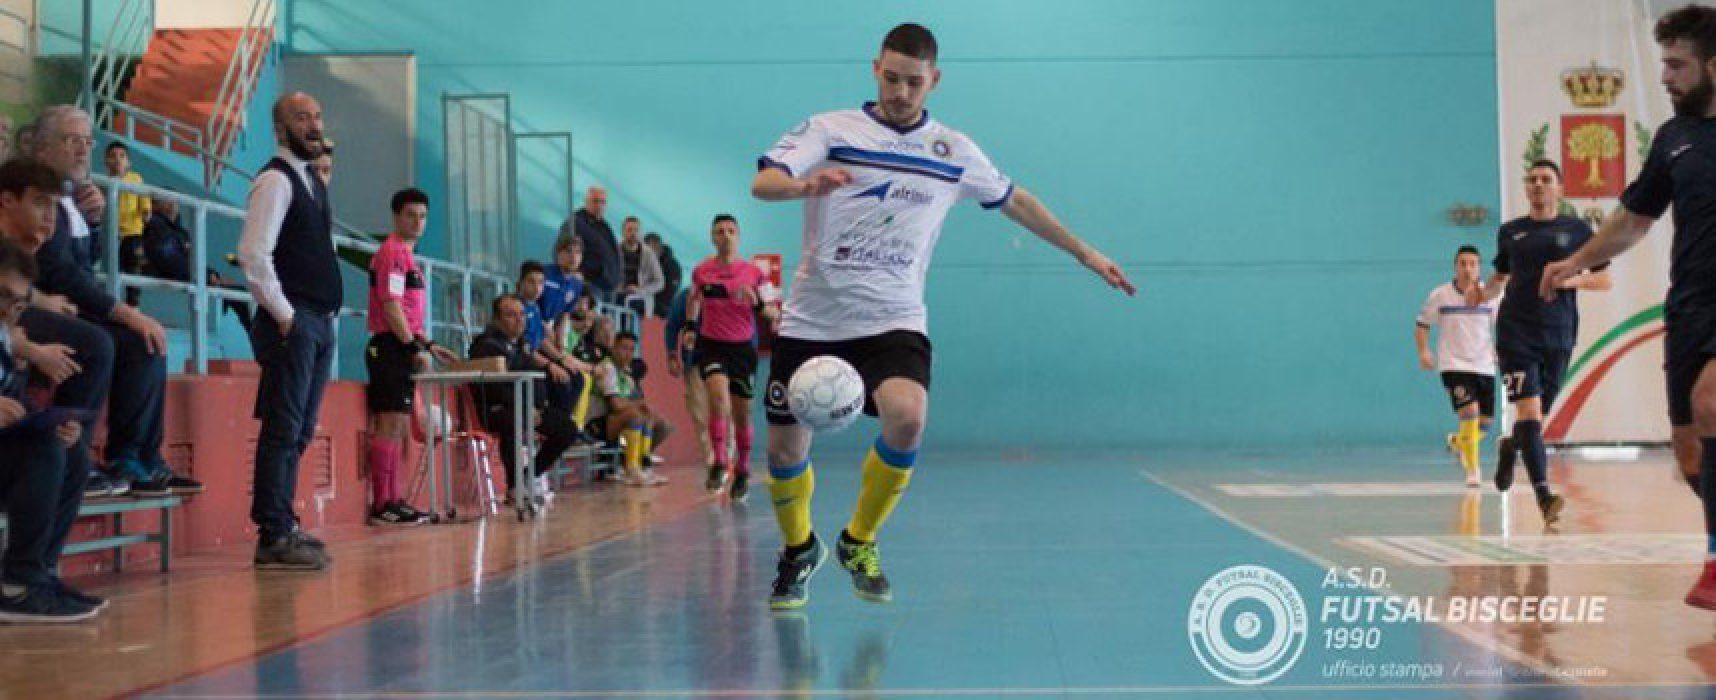 Futsal Bisceglie, sfida vitale contro il Barletta